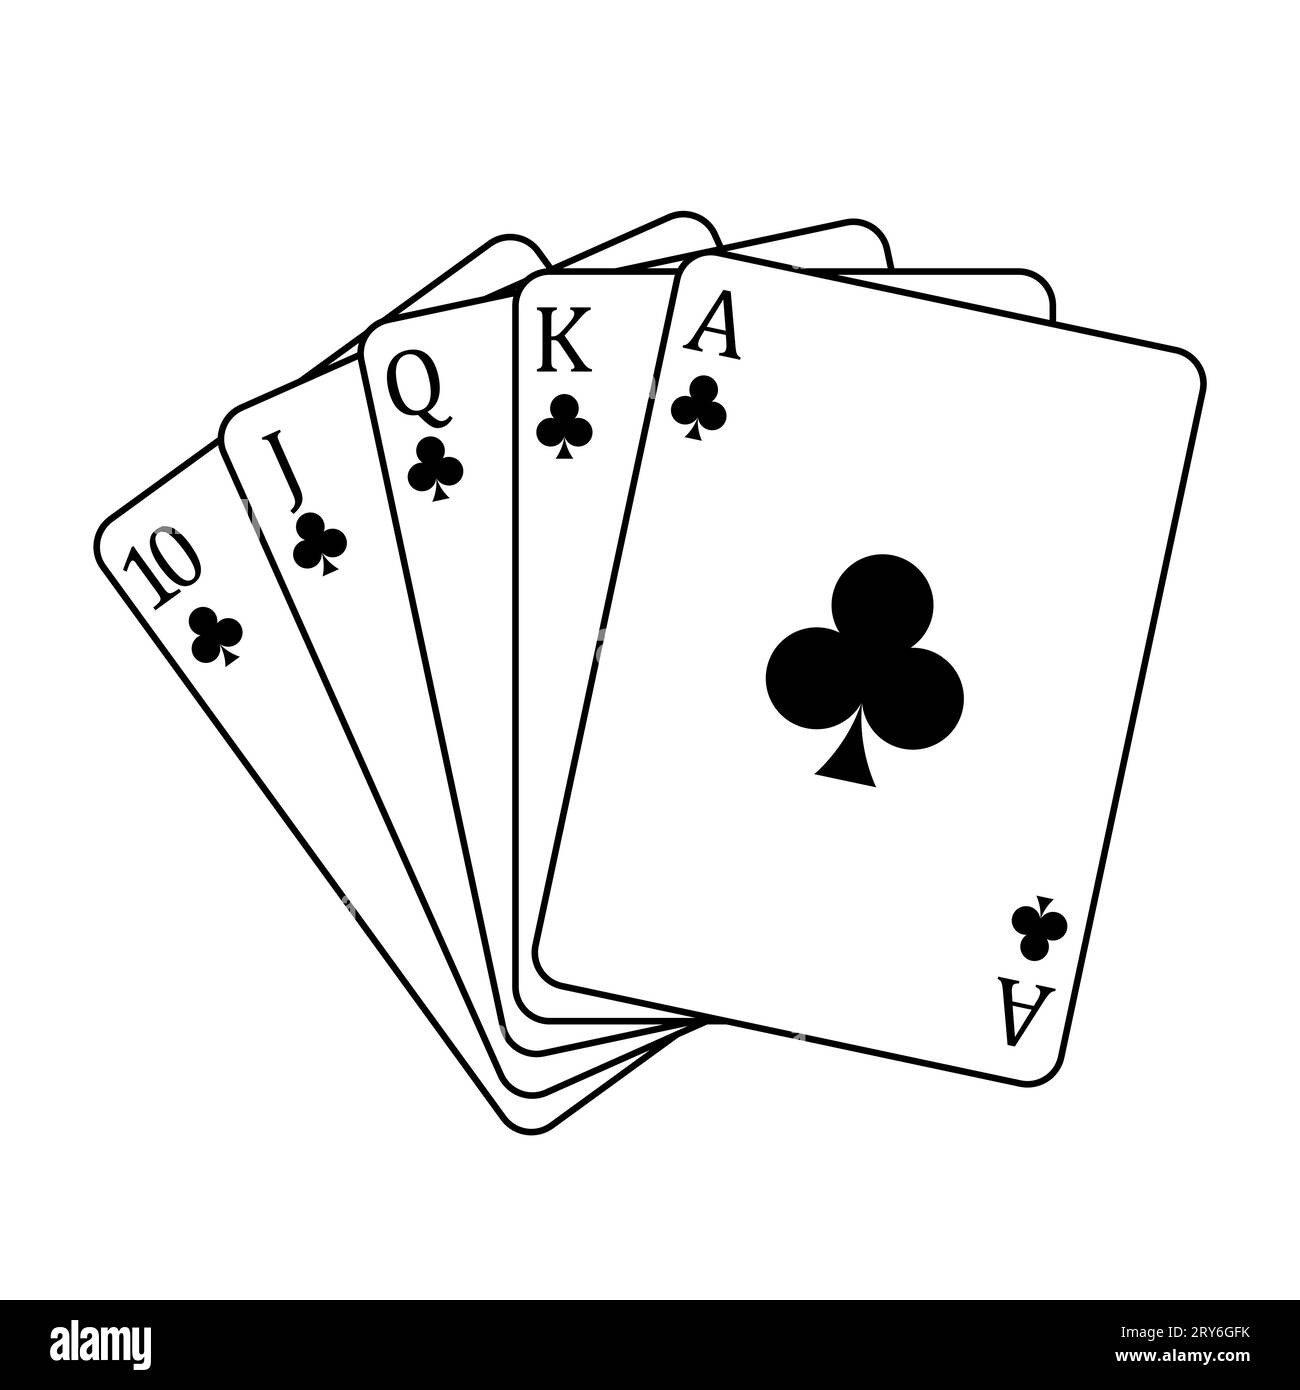 Carte da gioco - una mano di poker composta da un reale colore club 10 J Q K A, illustrazione vettoriale isolata su bianco Illustrazione Vettoriale